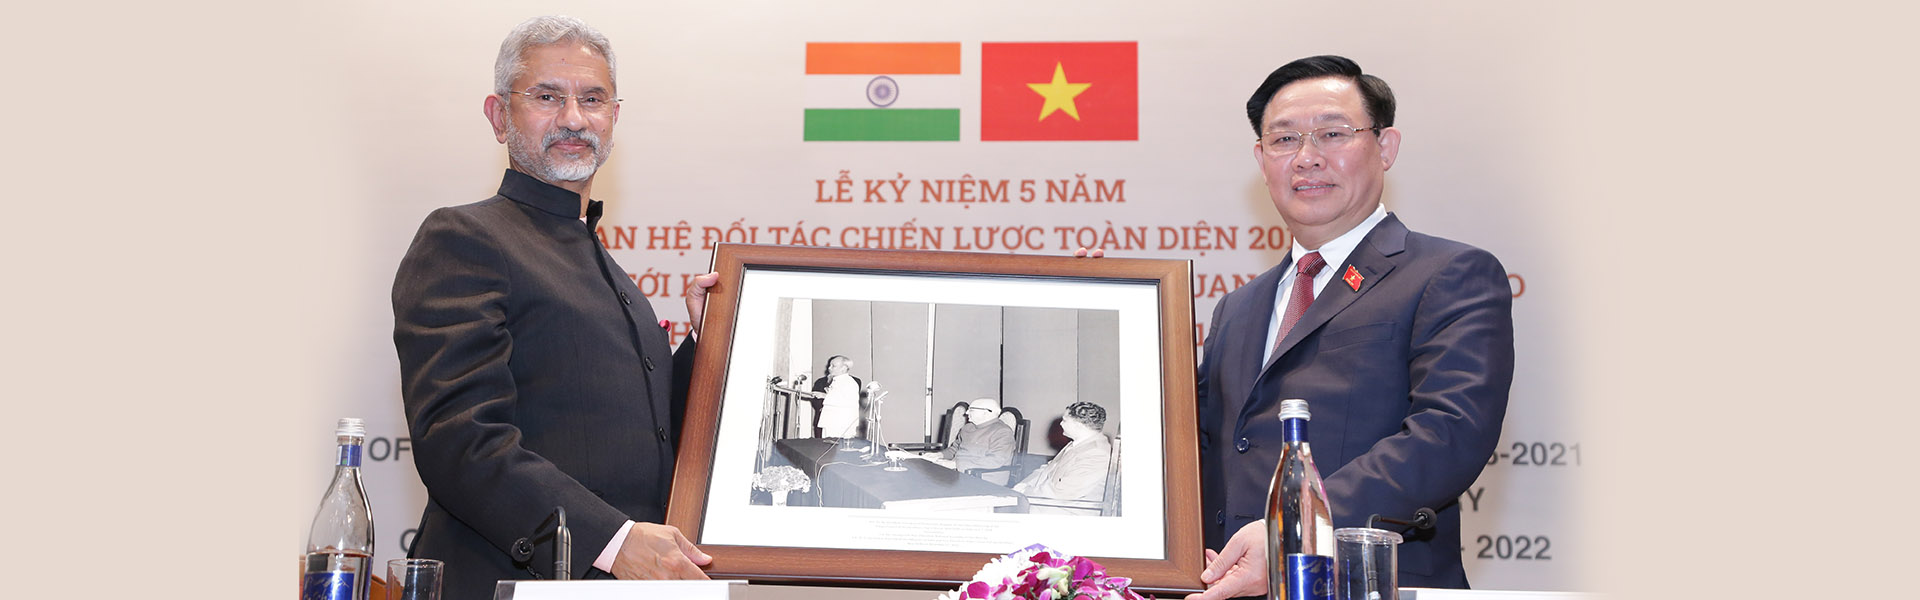 डॉ. एस. जयशंकर, विदेश मंत्री, भारत सरकार ने वियतनाम के पूर्व राष्ट्रपति हो ची मिन्ह की एक तस्वीर 7 फरवरी 1958 को आईसीडब्ल्यूए को संबोधित करते हुए वियतनाम की नेशनल असेंबली के अध्यक्ष, महामहिम वुओंग दिन्ह ह्यू को 17 दिसंबर 2021 को भेंट की।